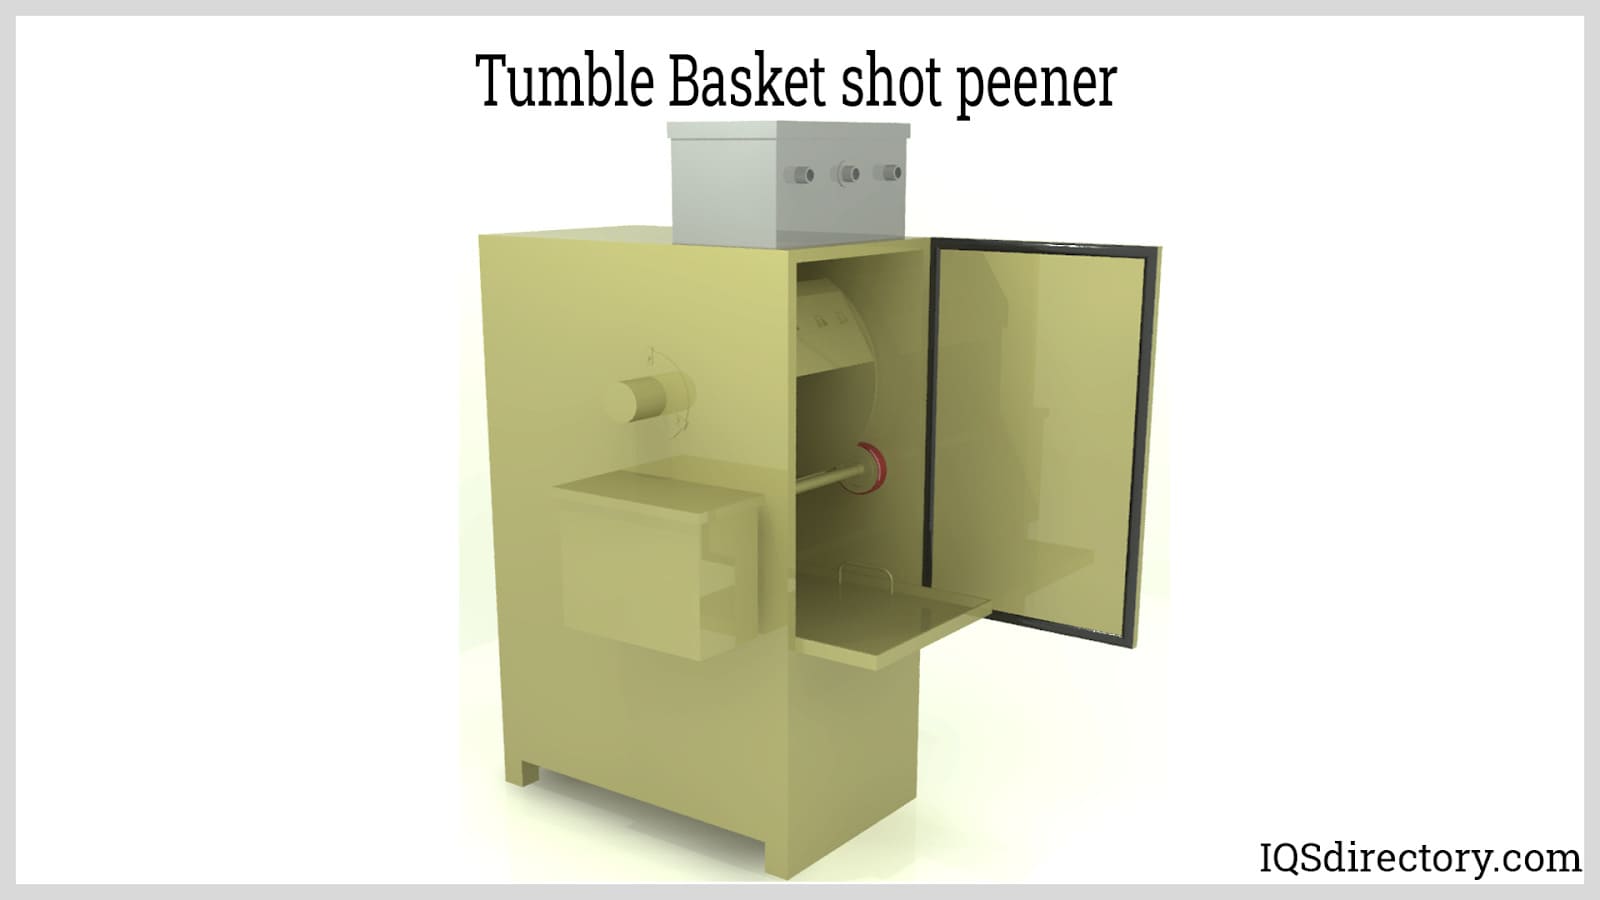 Tumble Basket shot peener